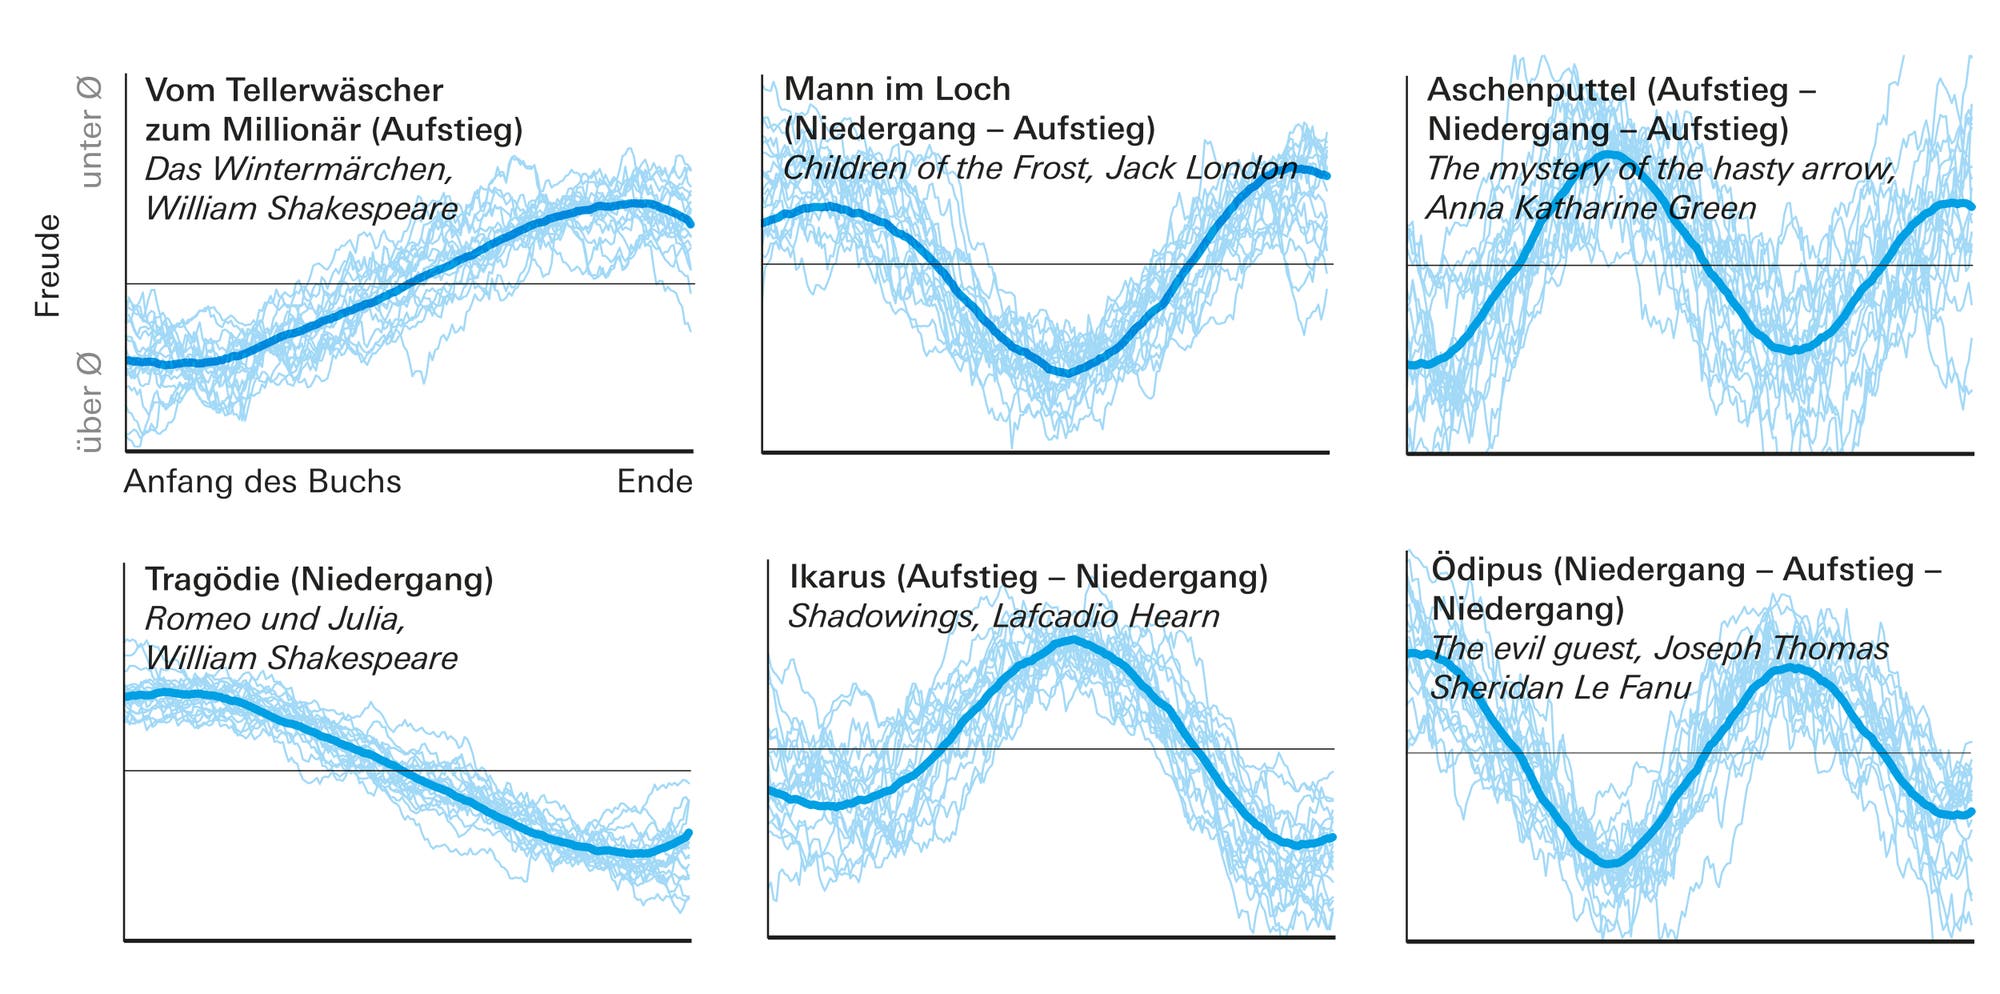 Sechs Kurven mit verschiedenen Verläufen, die den emotionalen Spannungsbogen in klassischen Werken zeigen.